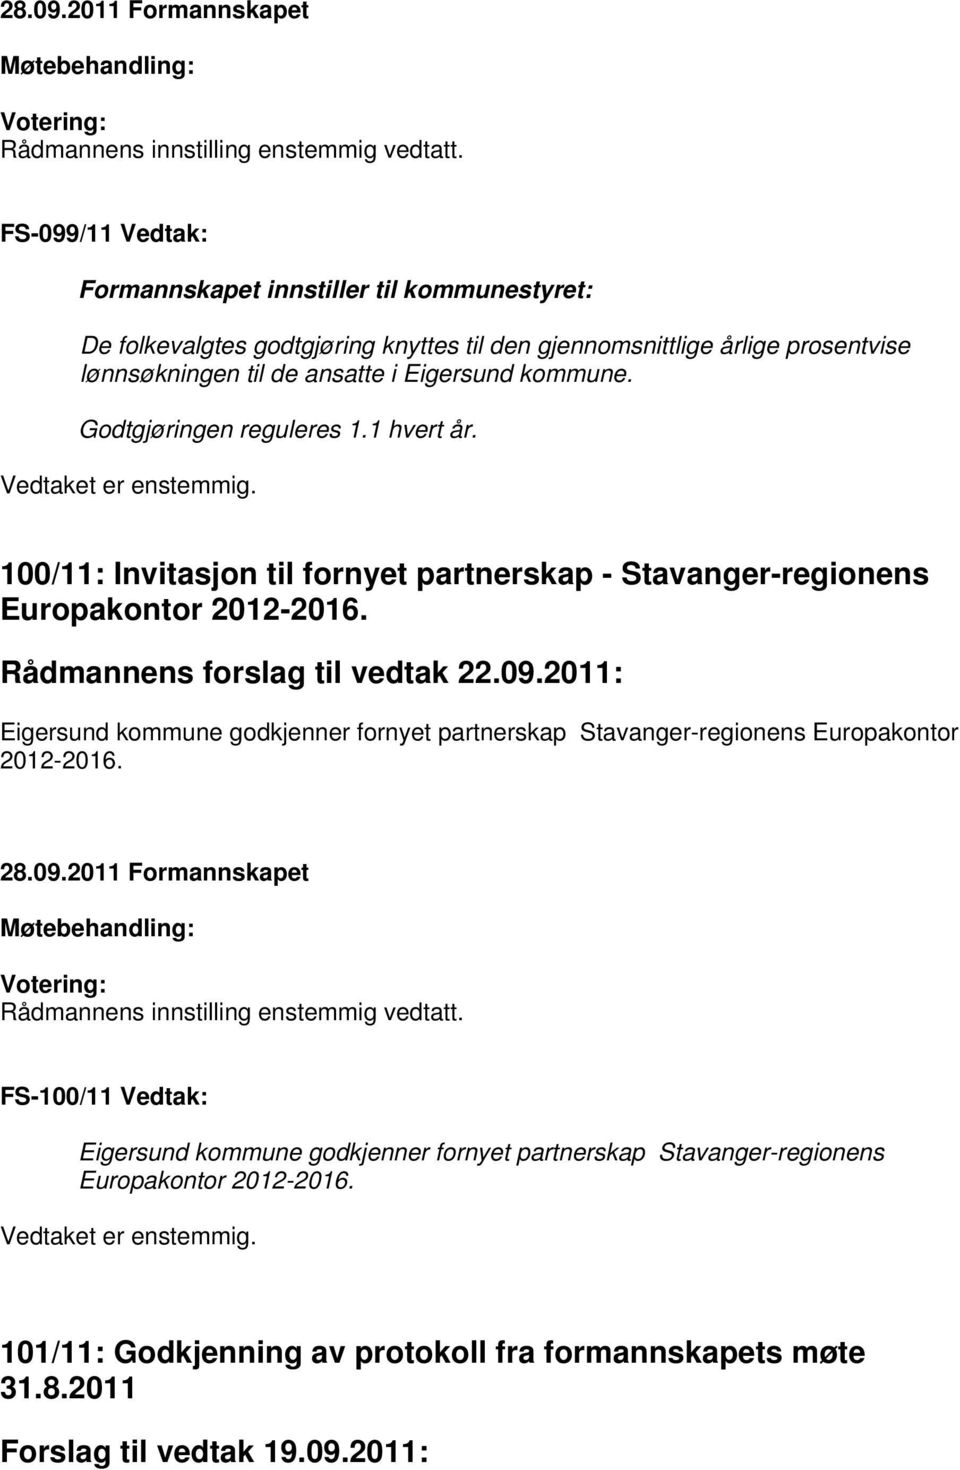 Godtgjøringen reguleres 1.1 hvert år. Vedtaket er enstemmig. 100/11: Invitasjon til fornyet partnerskap - Stavanger-regionens Europakontor 2012-2016. Rådmannens forslag til vedtak 22.09.